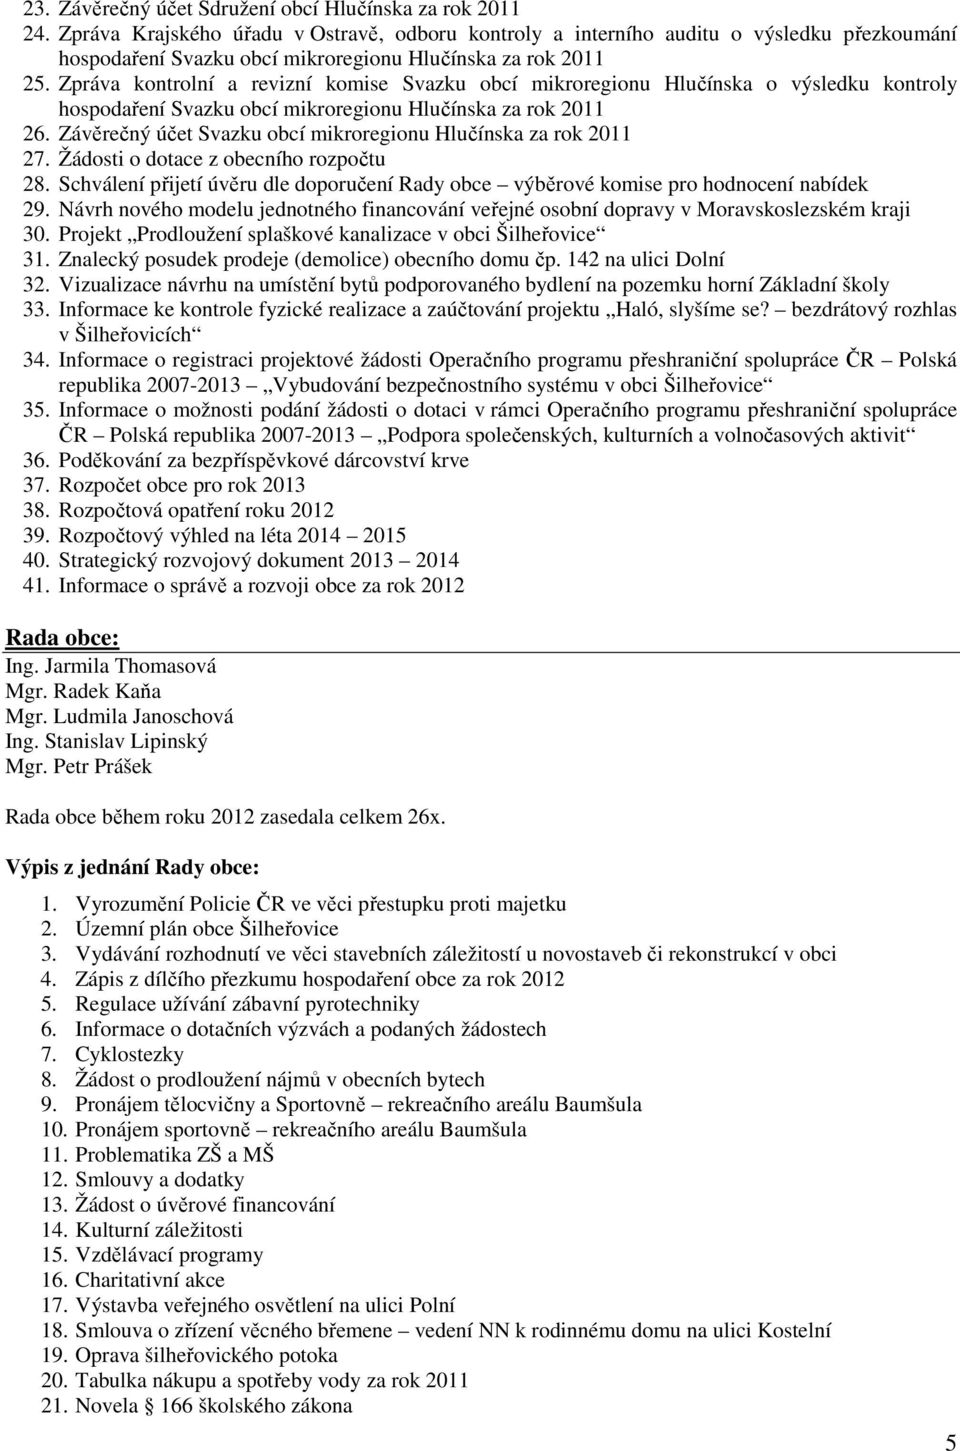 Zpráva kontrolní a revizní komise Svazku obcí mikroregionu Hlučínska o výsledku kontroly hospodaření Svazku obcí mikroregionu Hlučínska za rok 2011 26.